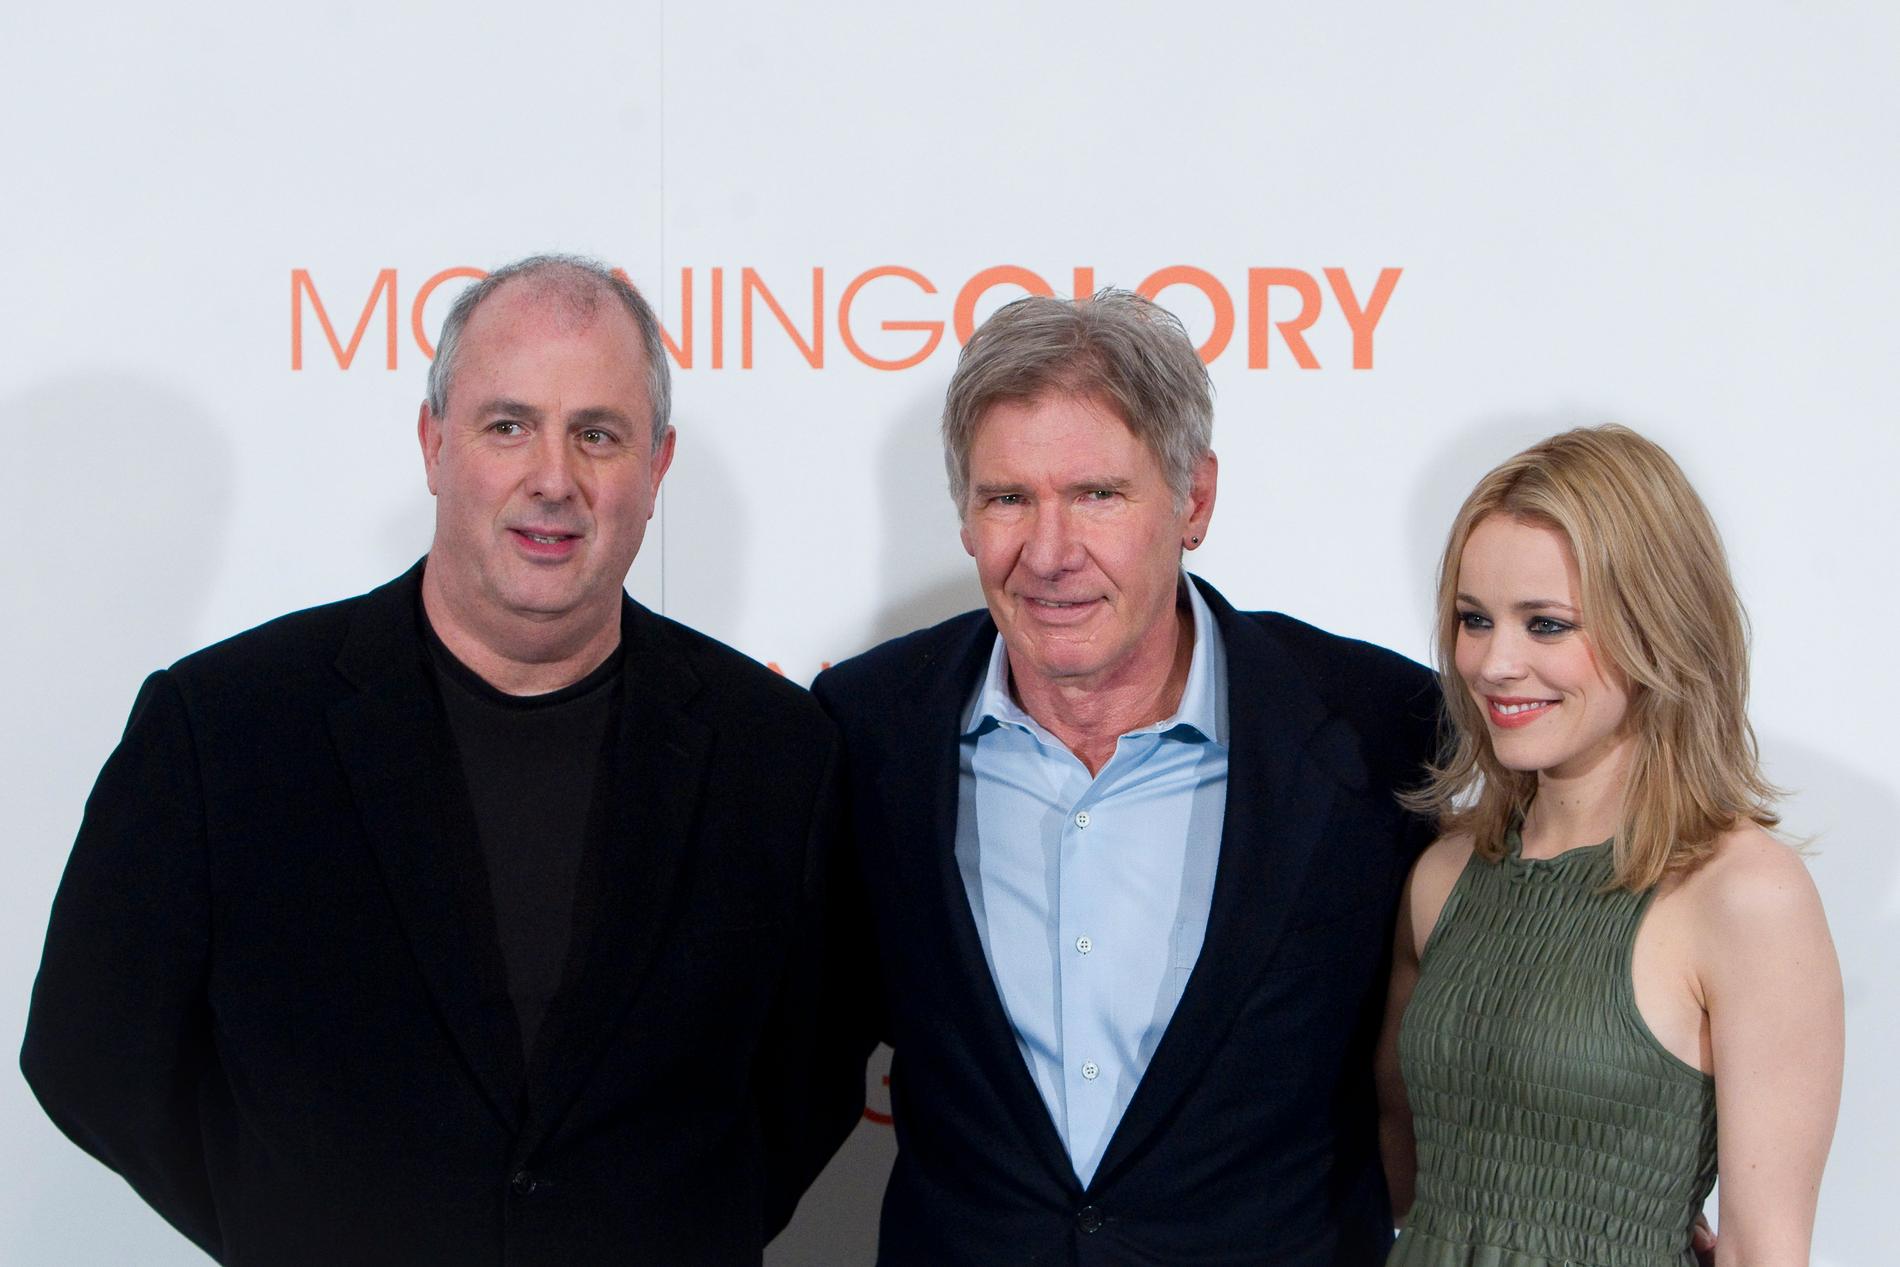 Roger Michell tillsammans med Harrison Ford och Rachel McAdams som han regisserade i filmen ”Morning glory”.